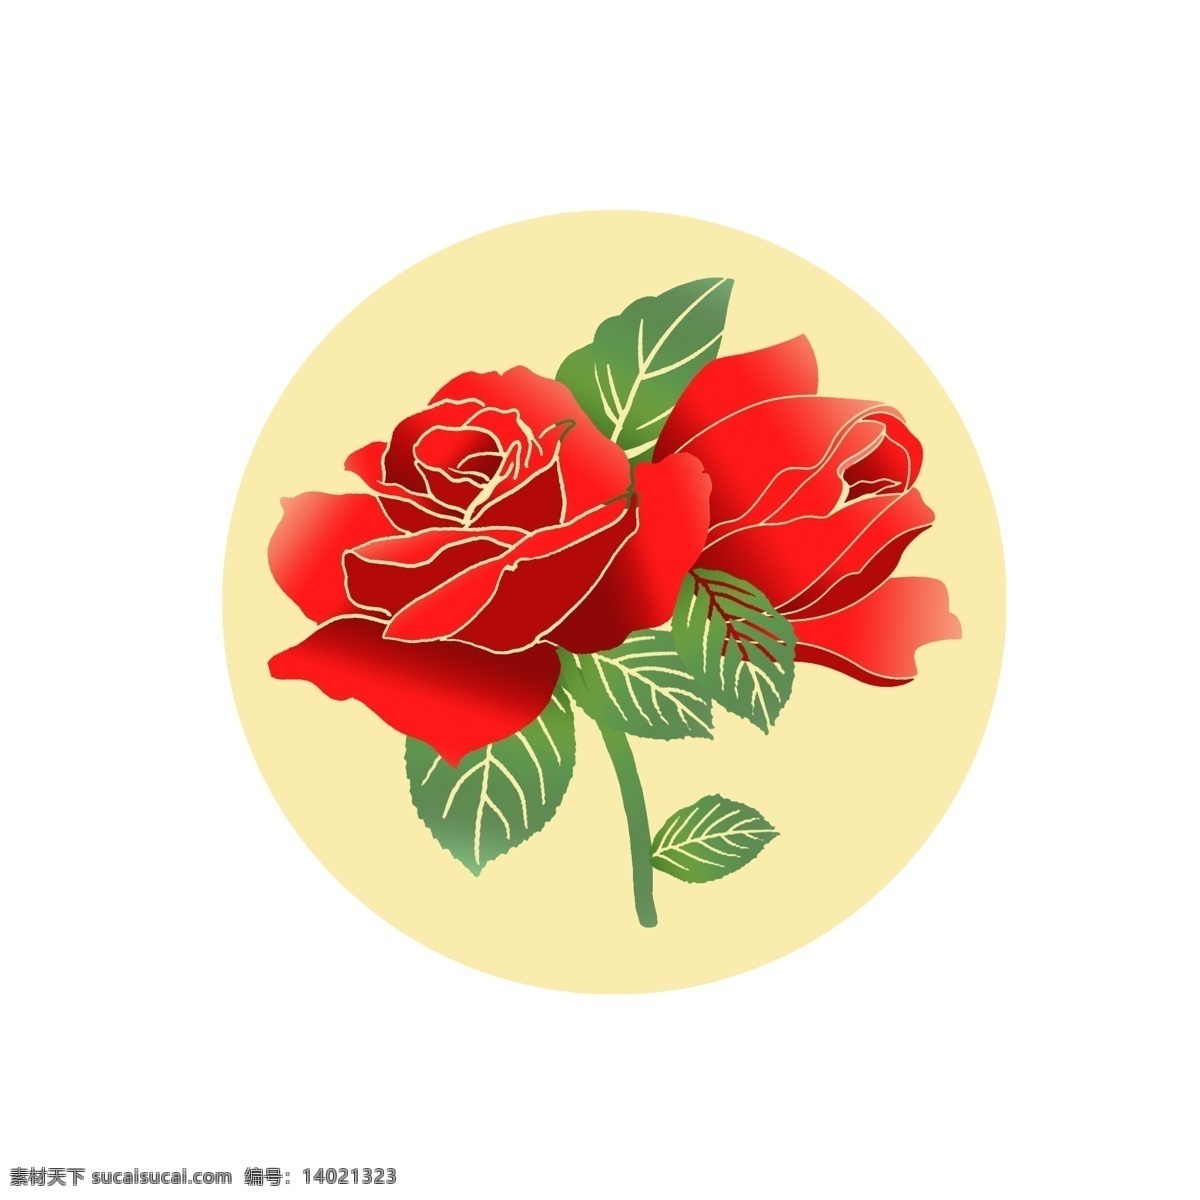 玫瑰花 手绘 玫瑰红色 玫瑰 情人节 元素 红色玫瑰 情人节玫瑰 手绘玫瑰 手绘花卉 喜庆 玫瑰元素 节日玫瑰